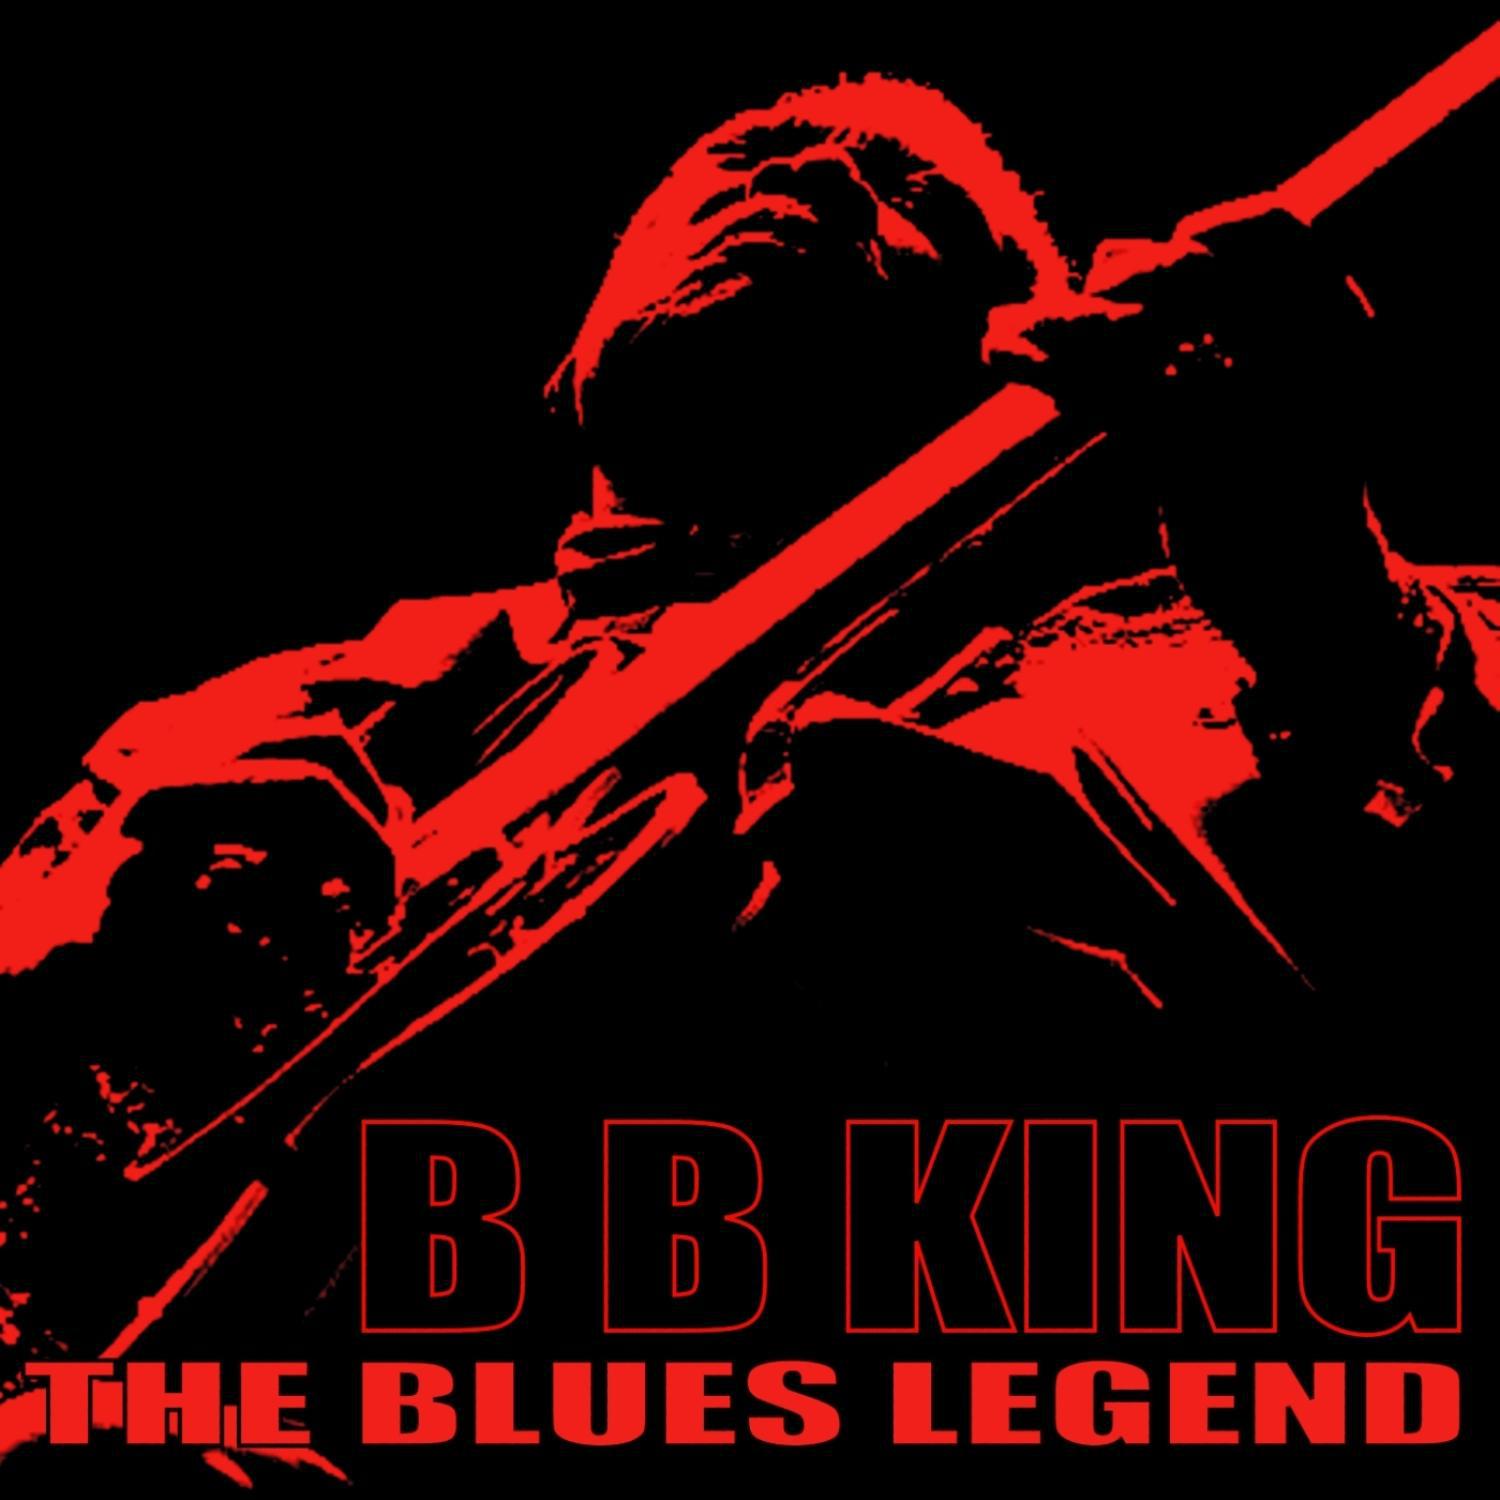 The Blues Legend